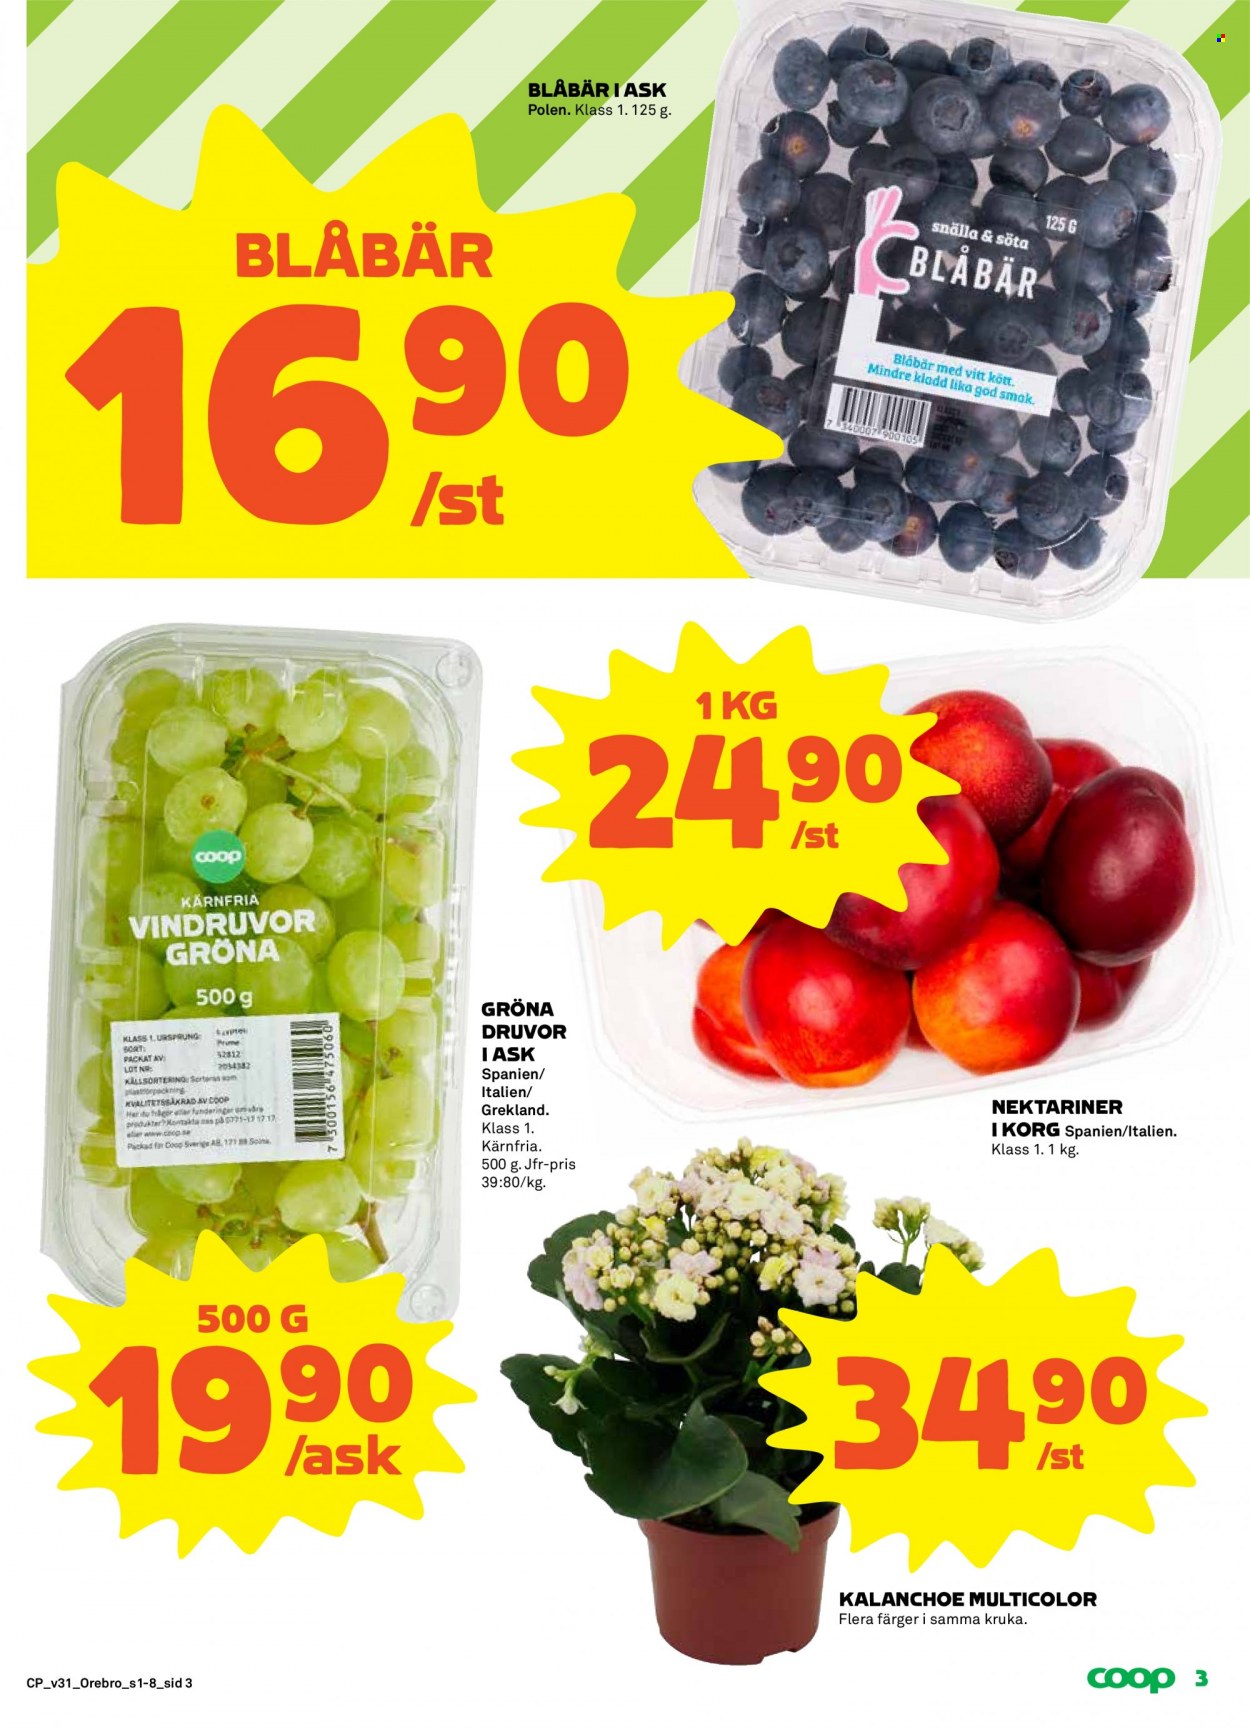 Coop reklamblad - 1/8 2022 - 7/8 2022 - varor från reklamblad - gröna druvor, vindruvor, nektariner, Kalanchoe, kruka. Sida 3.